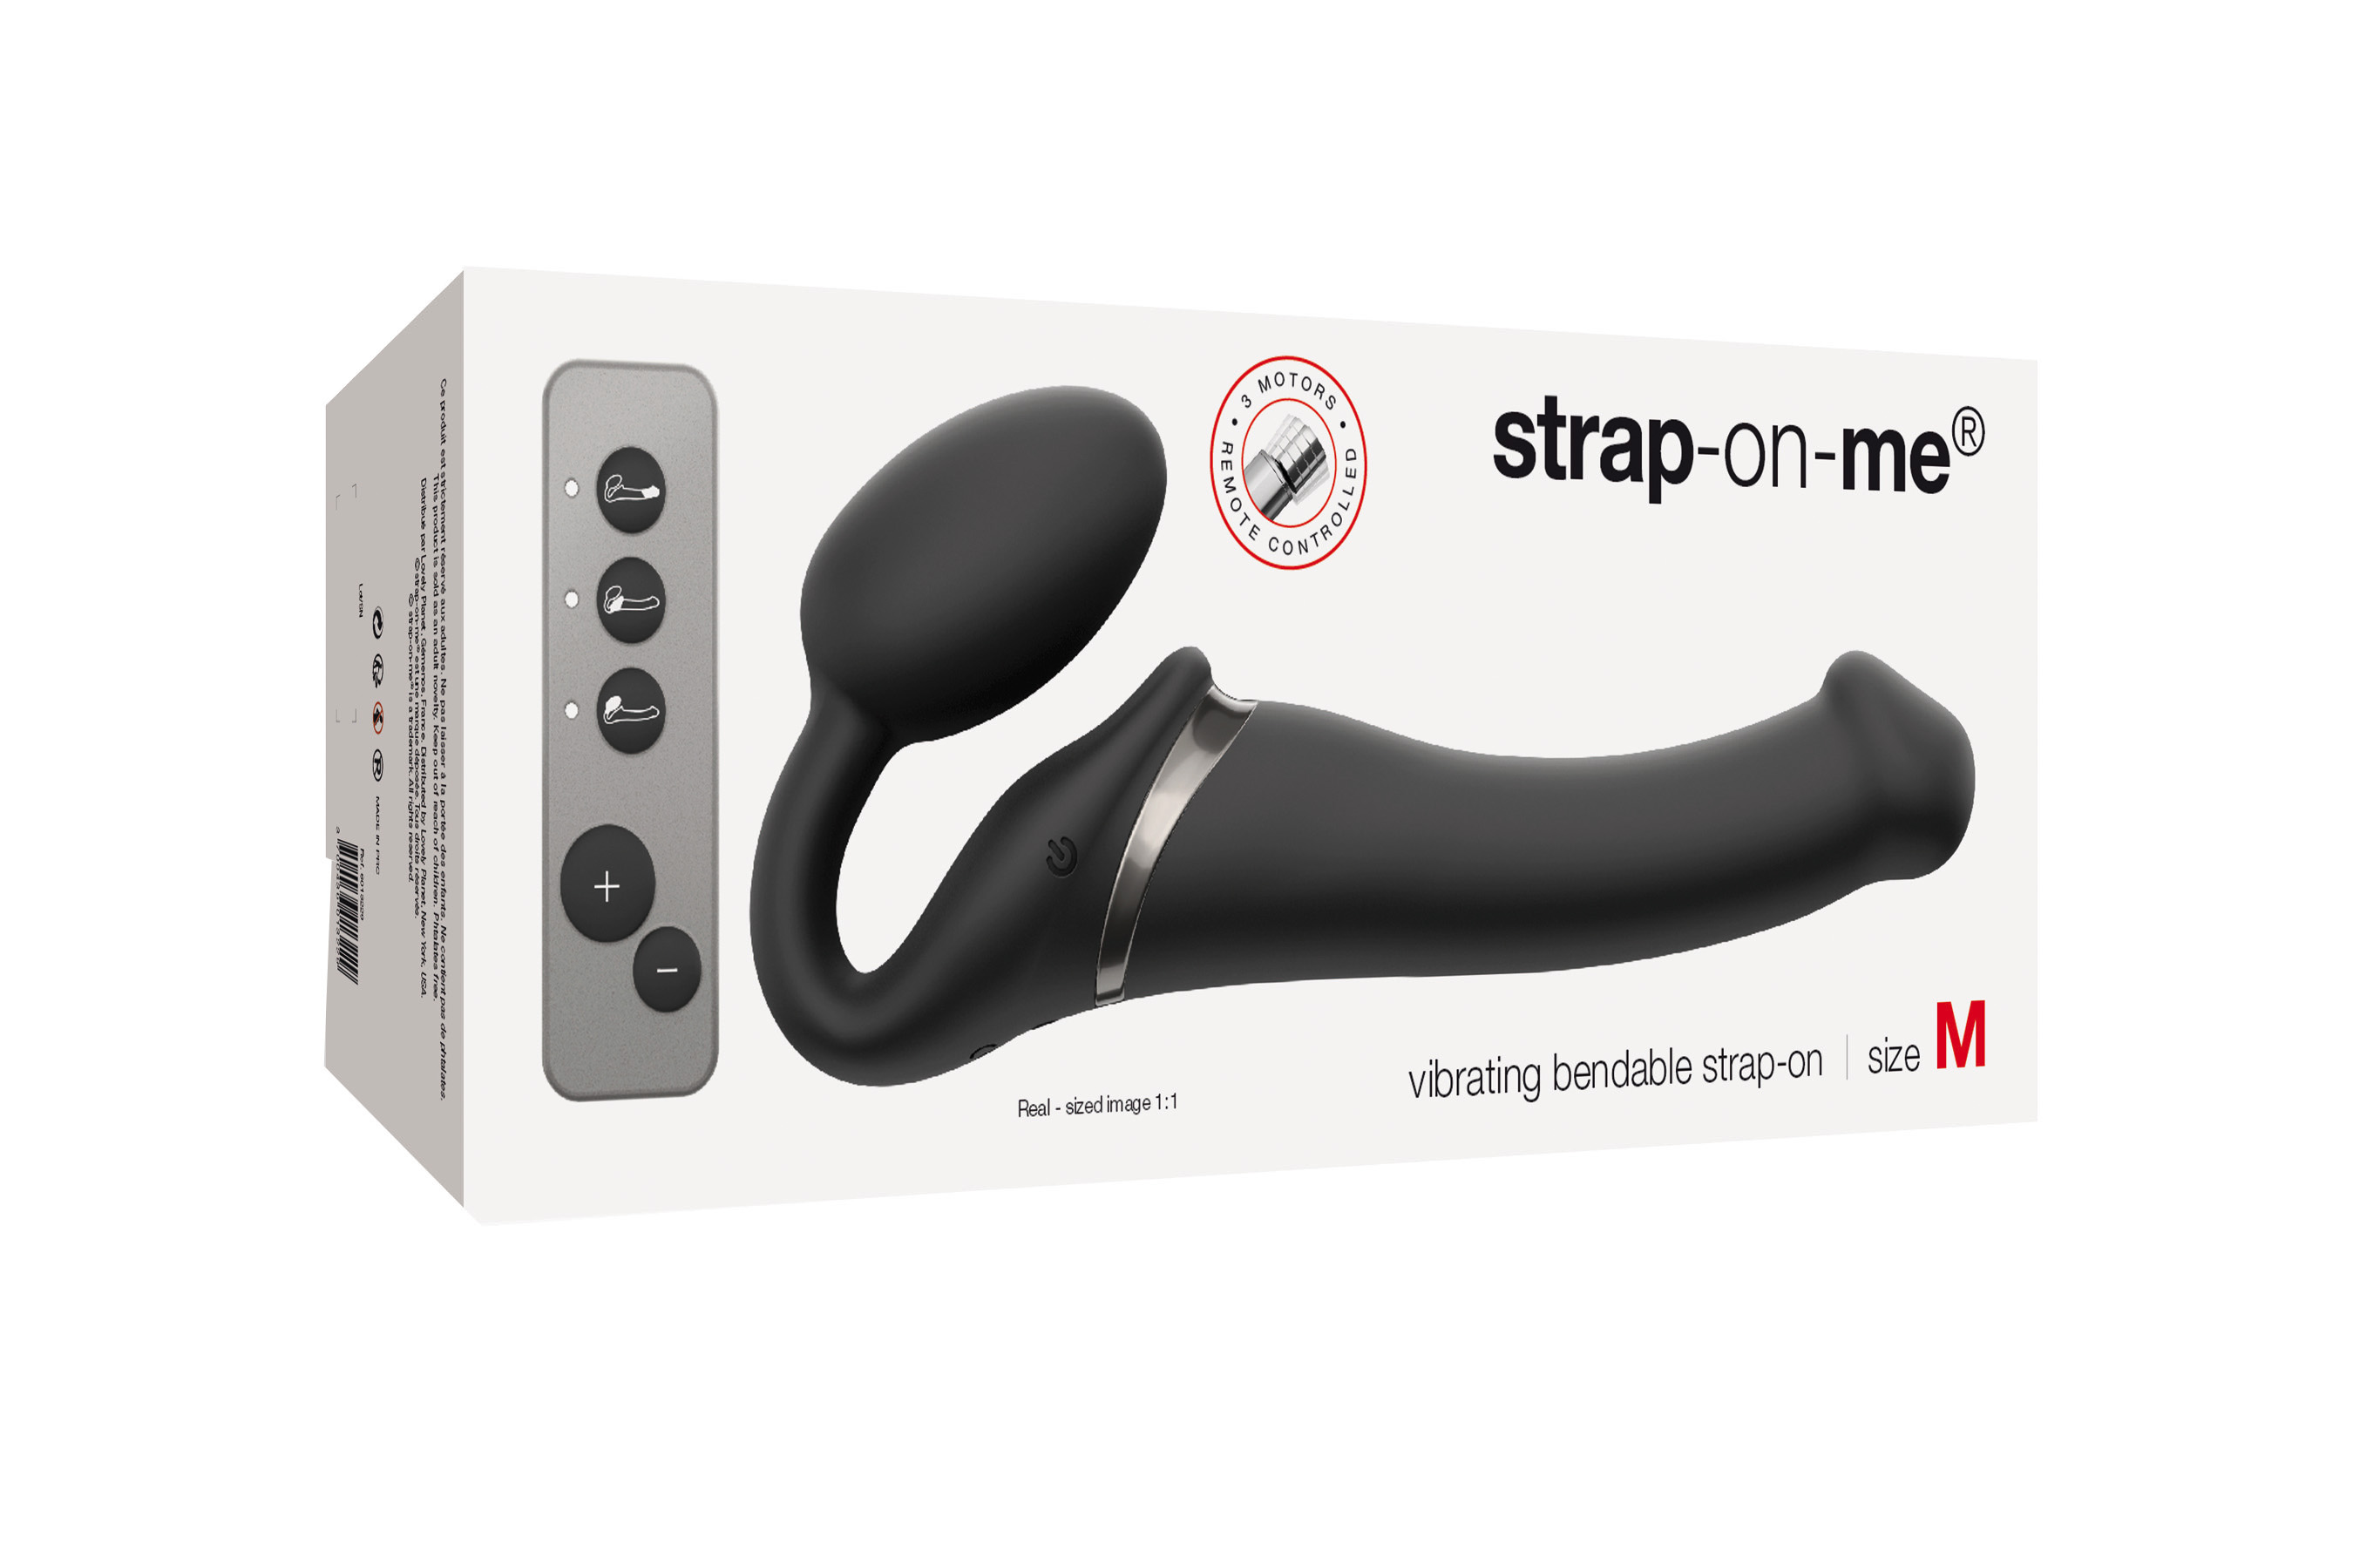 Strap-on-me Vibrating bendable strap-on black M